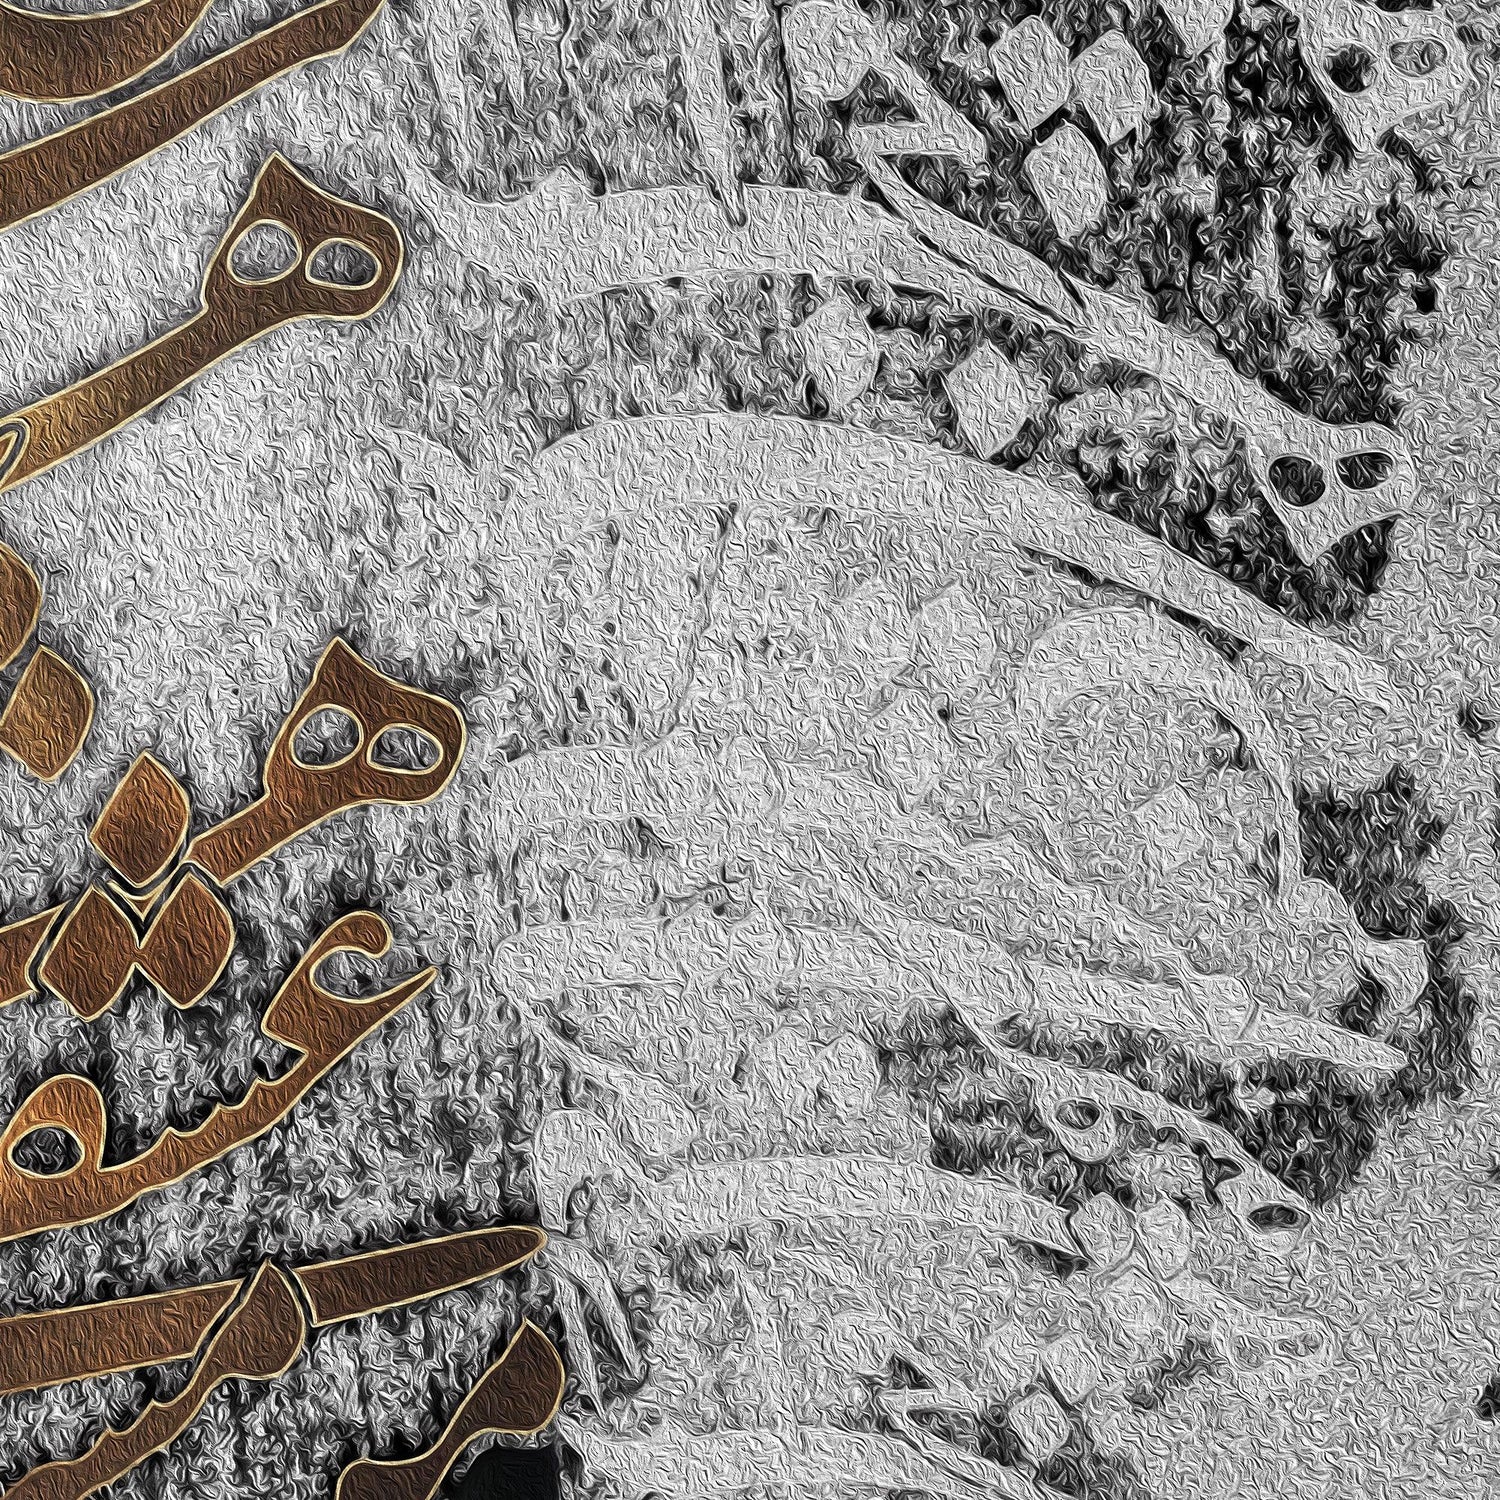 I won't be conscious | Persian Wall Art | Persian Home Wall Decor - ORIAVI Persian Art, persian artwork for sale, persian calligraphy, persian calligraphy wall art, persian mix media wall art, persian painting, persian wall art, Persian Wall Art for Sale